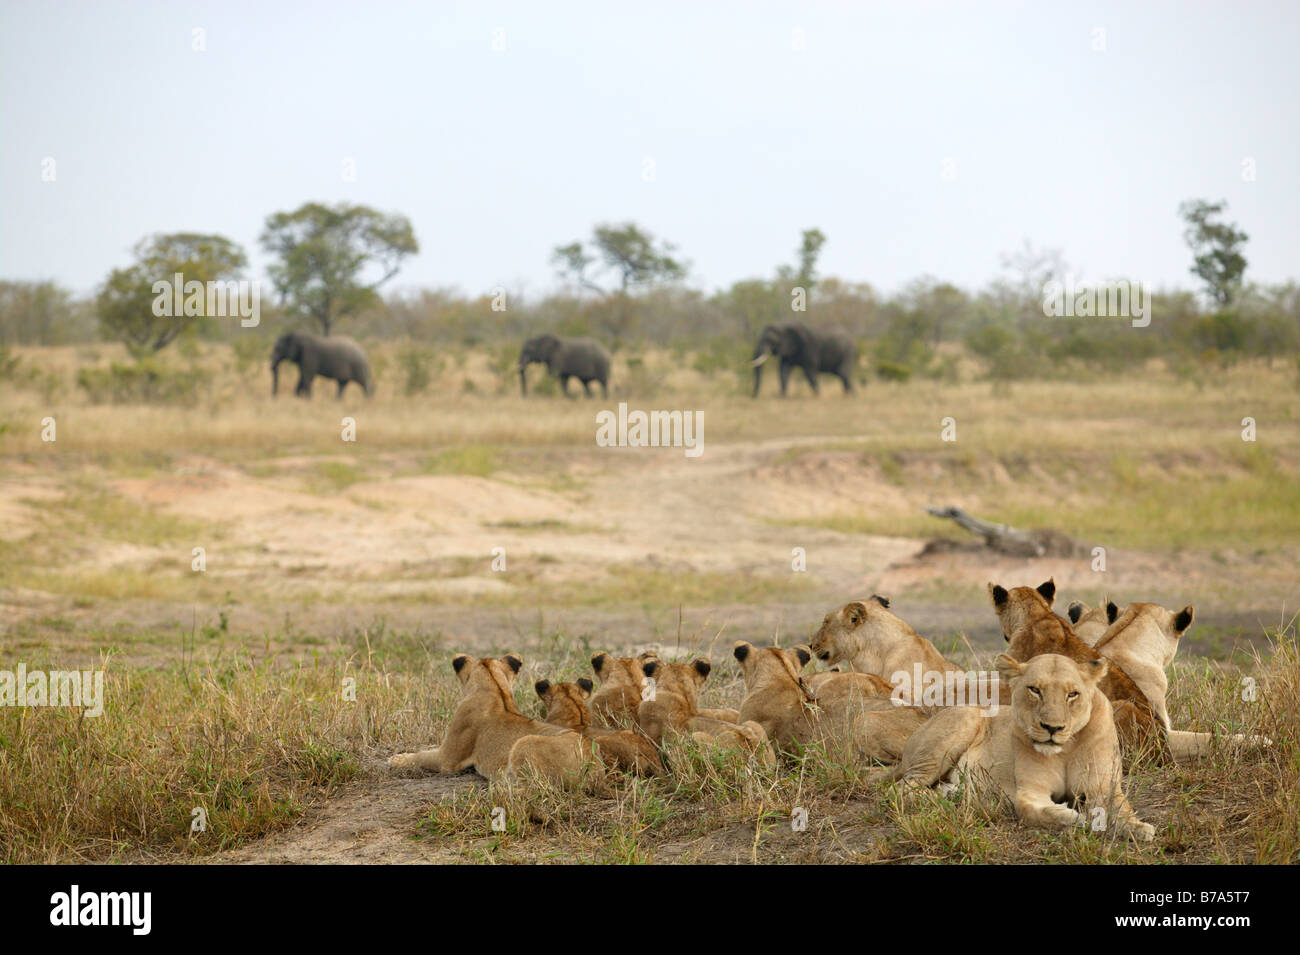 Ein großes Rudel Löwen liegt auf ein offenes Grasland beobachten drei Elefanten-Bullen vorbei mit Gleichgültigkeit Stockfoto